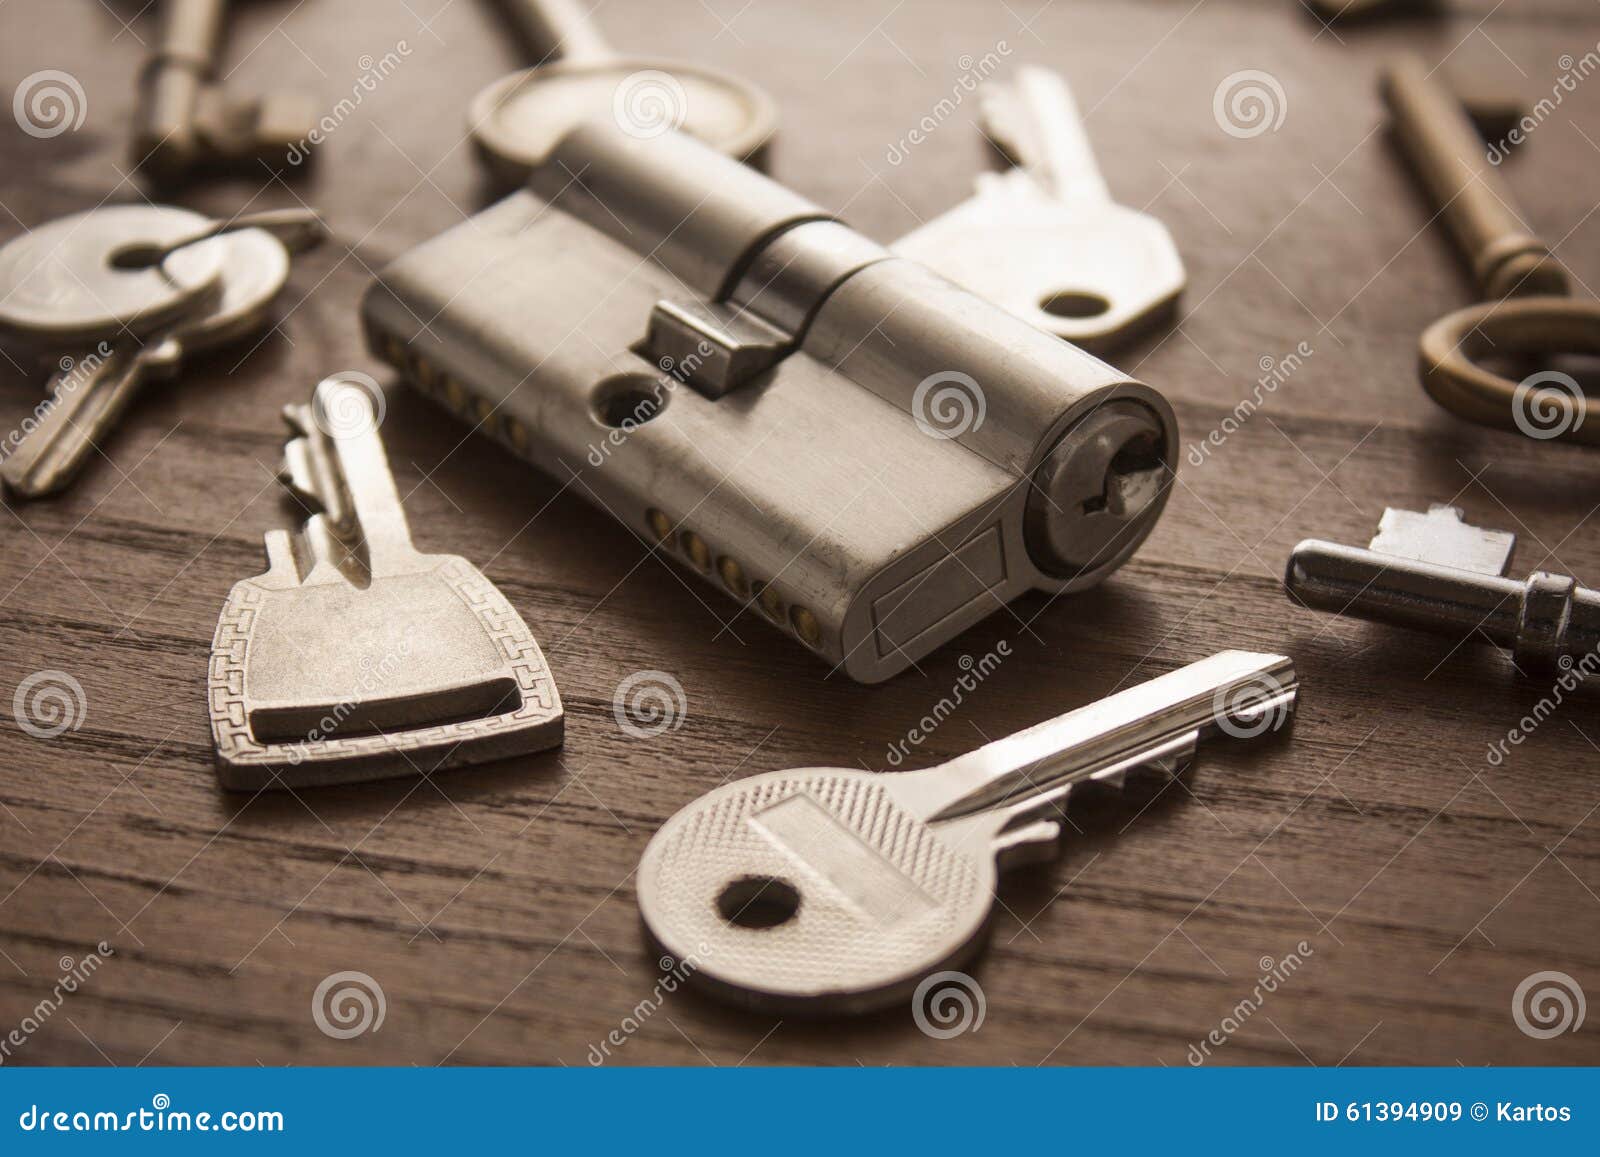 door lock with keys